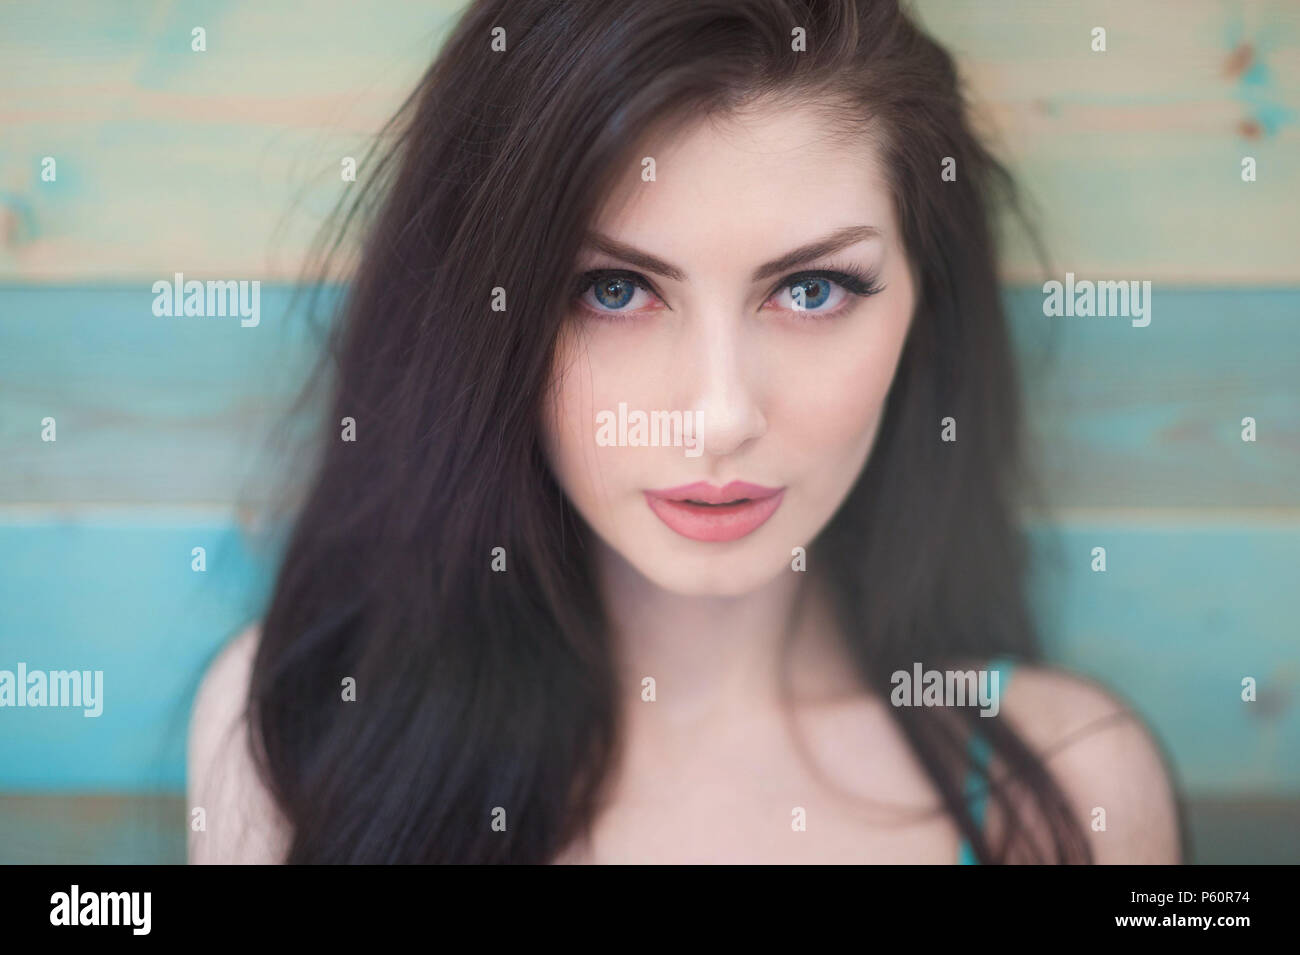 Ritratto di bella ragazza caucasica con capelli belli con gli occhi blu sul colorato sfondo di legno Foto Stock